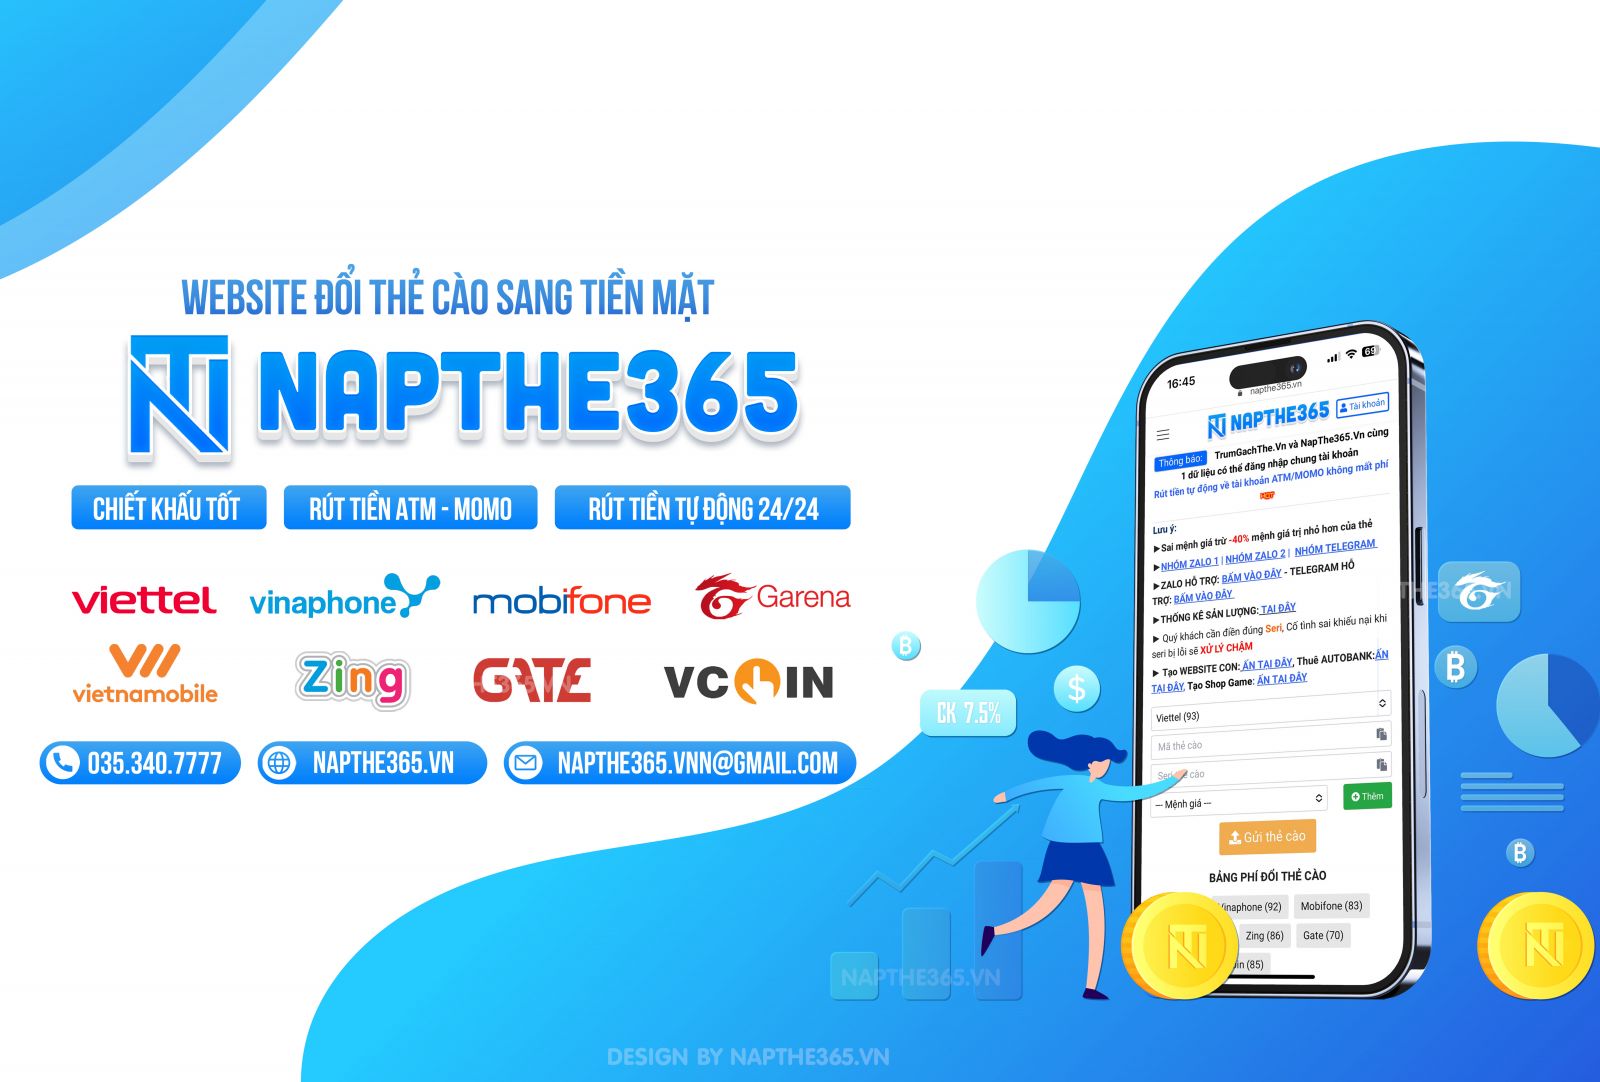 NapThe365.vn - Giải pháp đổi thẻ cào thành tiền mặt nhanh chóng và tiện lợi